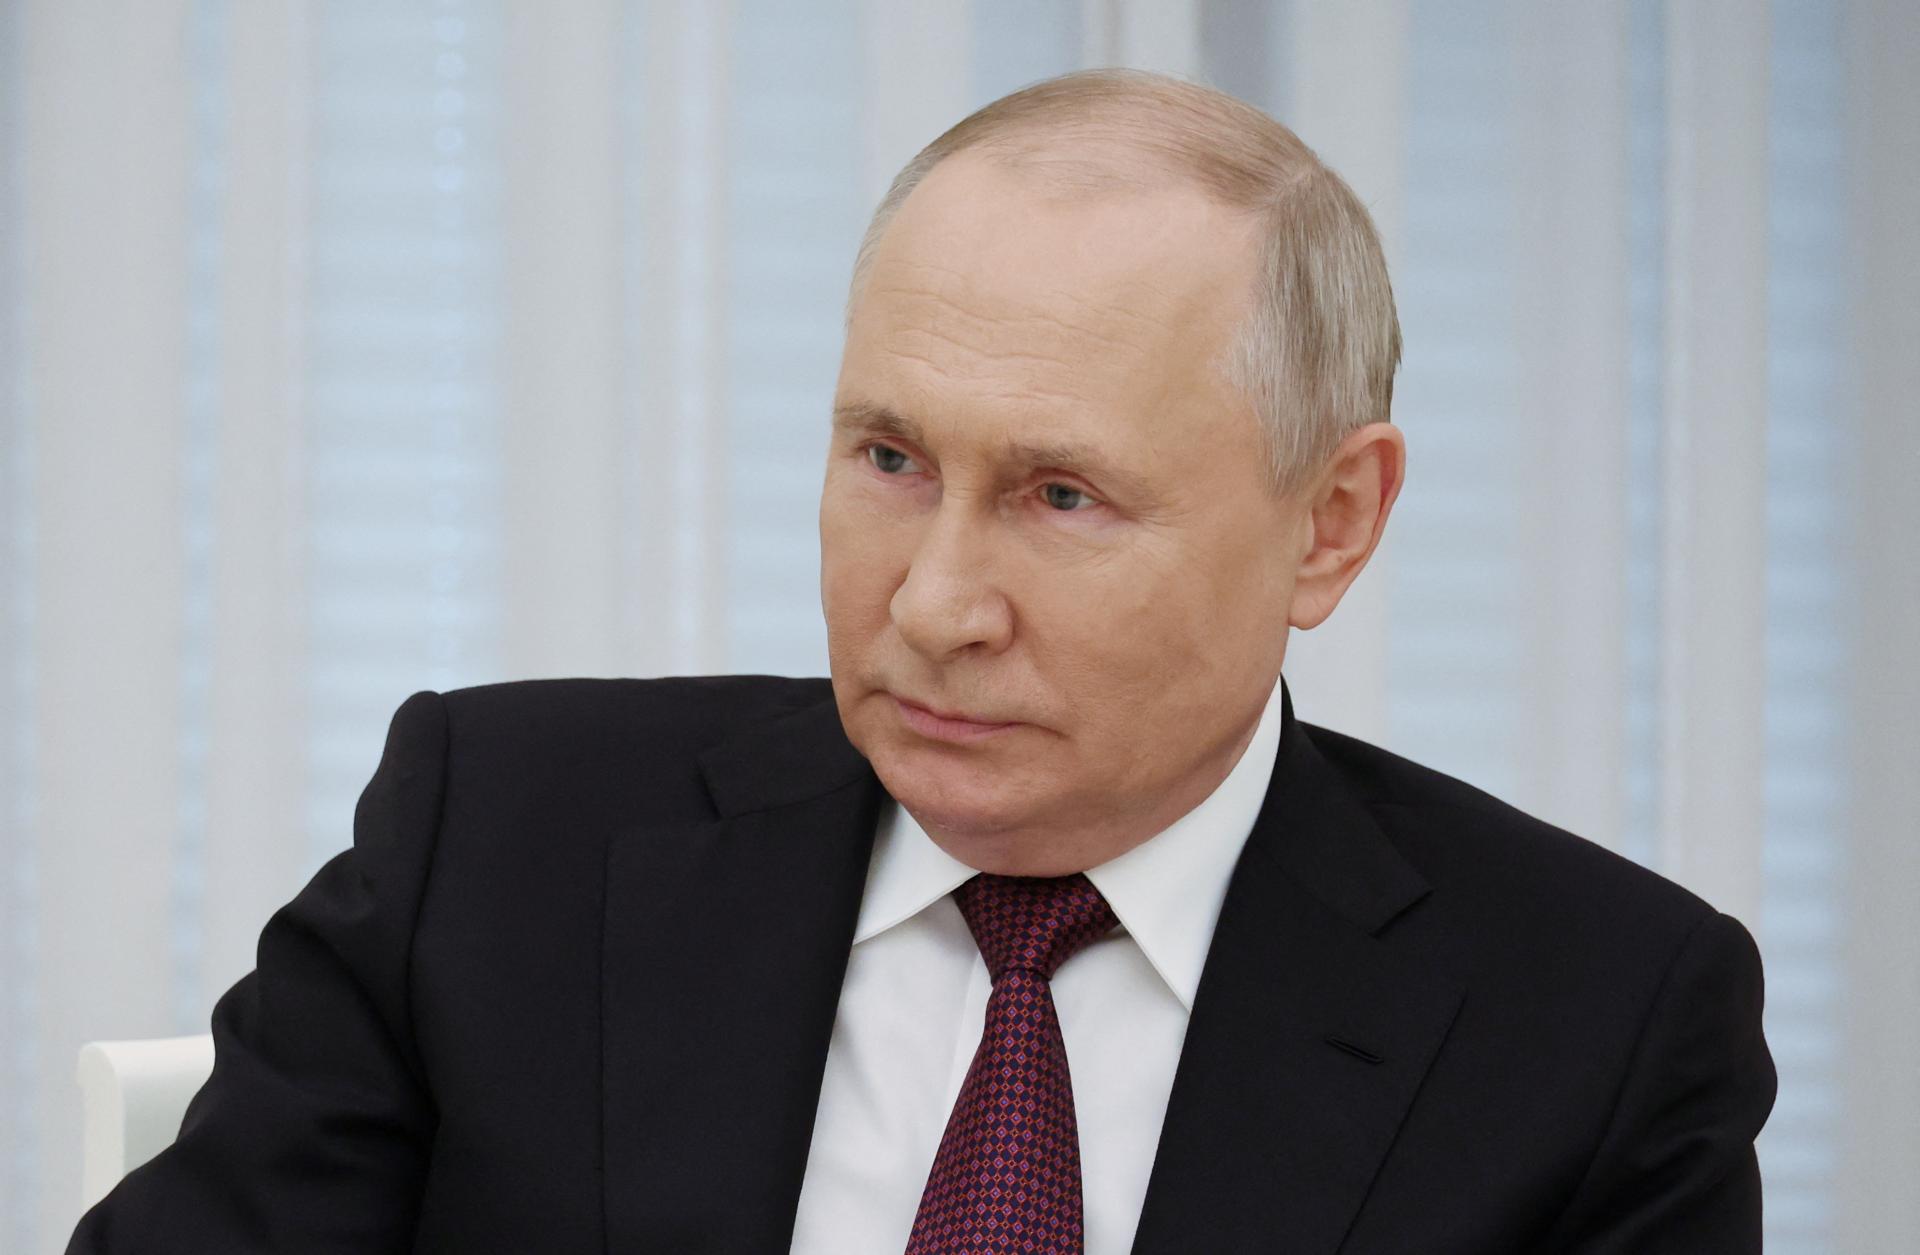 Putin po páde Prigožinovho lietadla vyjadril sústrasť pozostalým